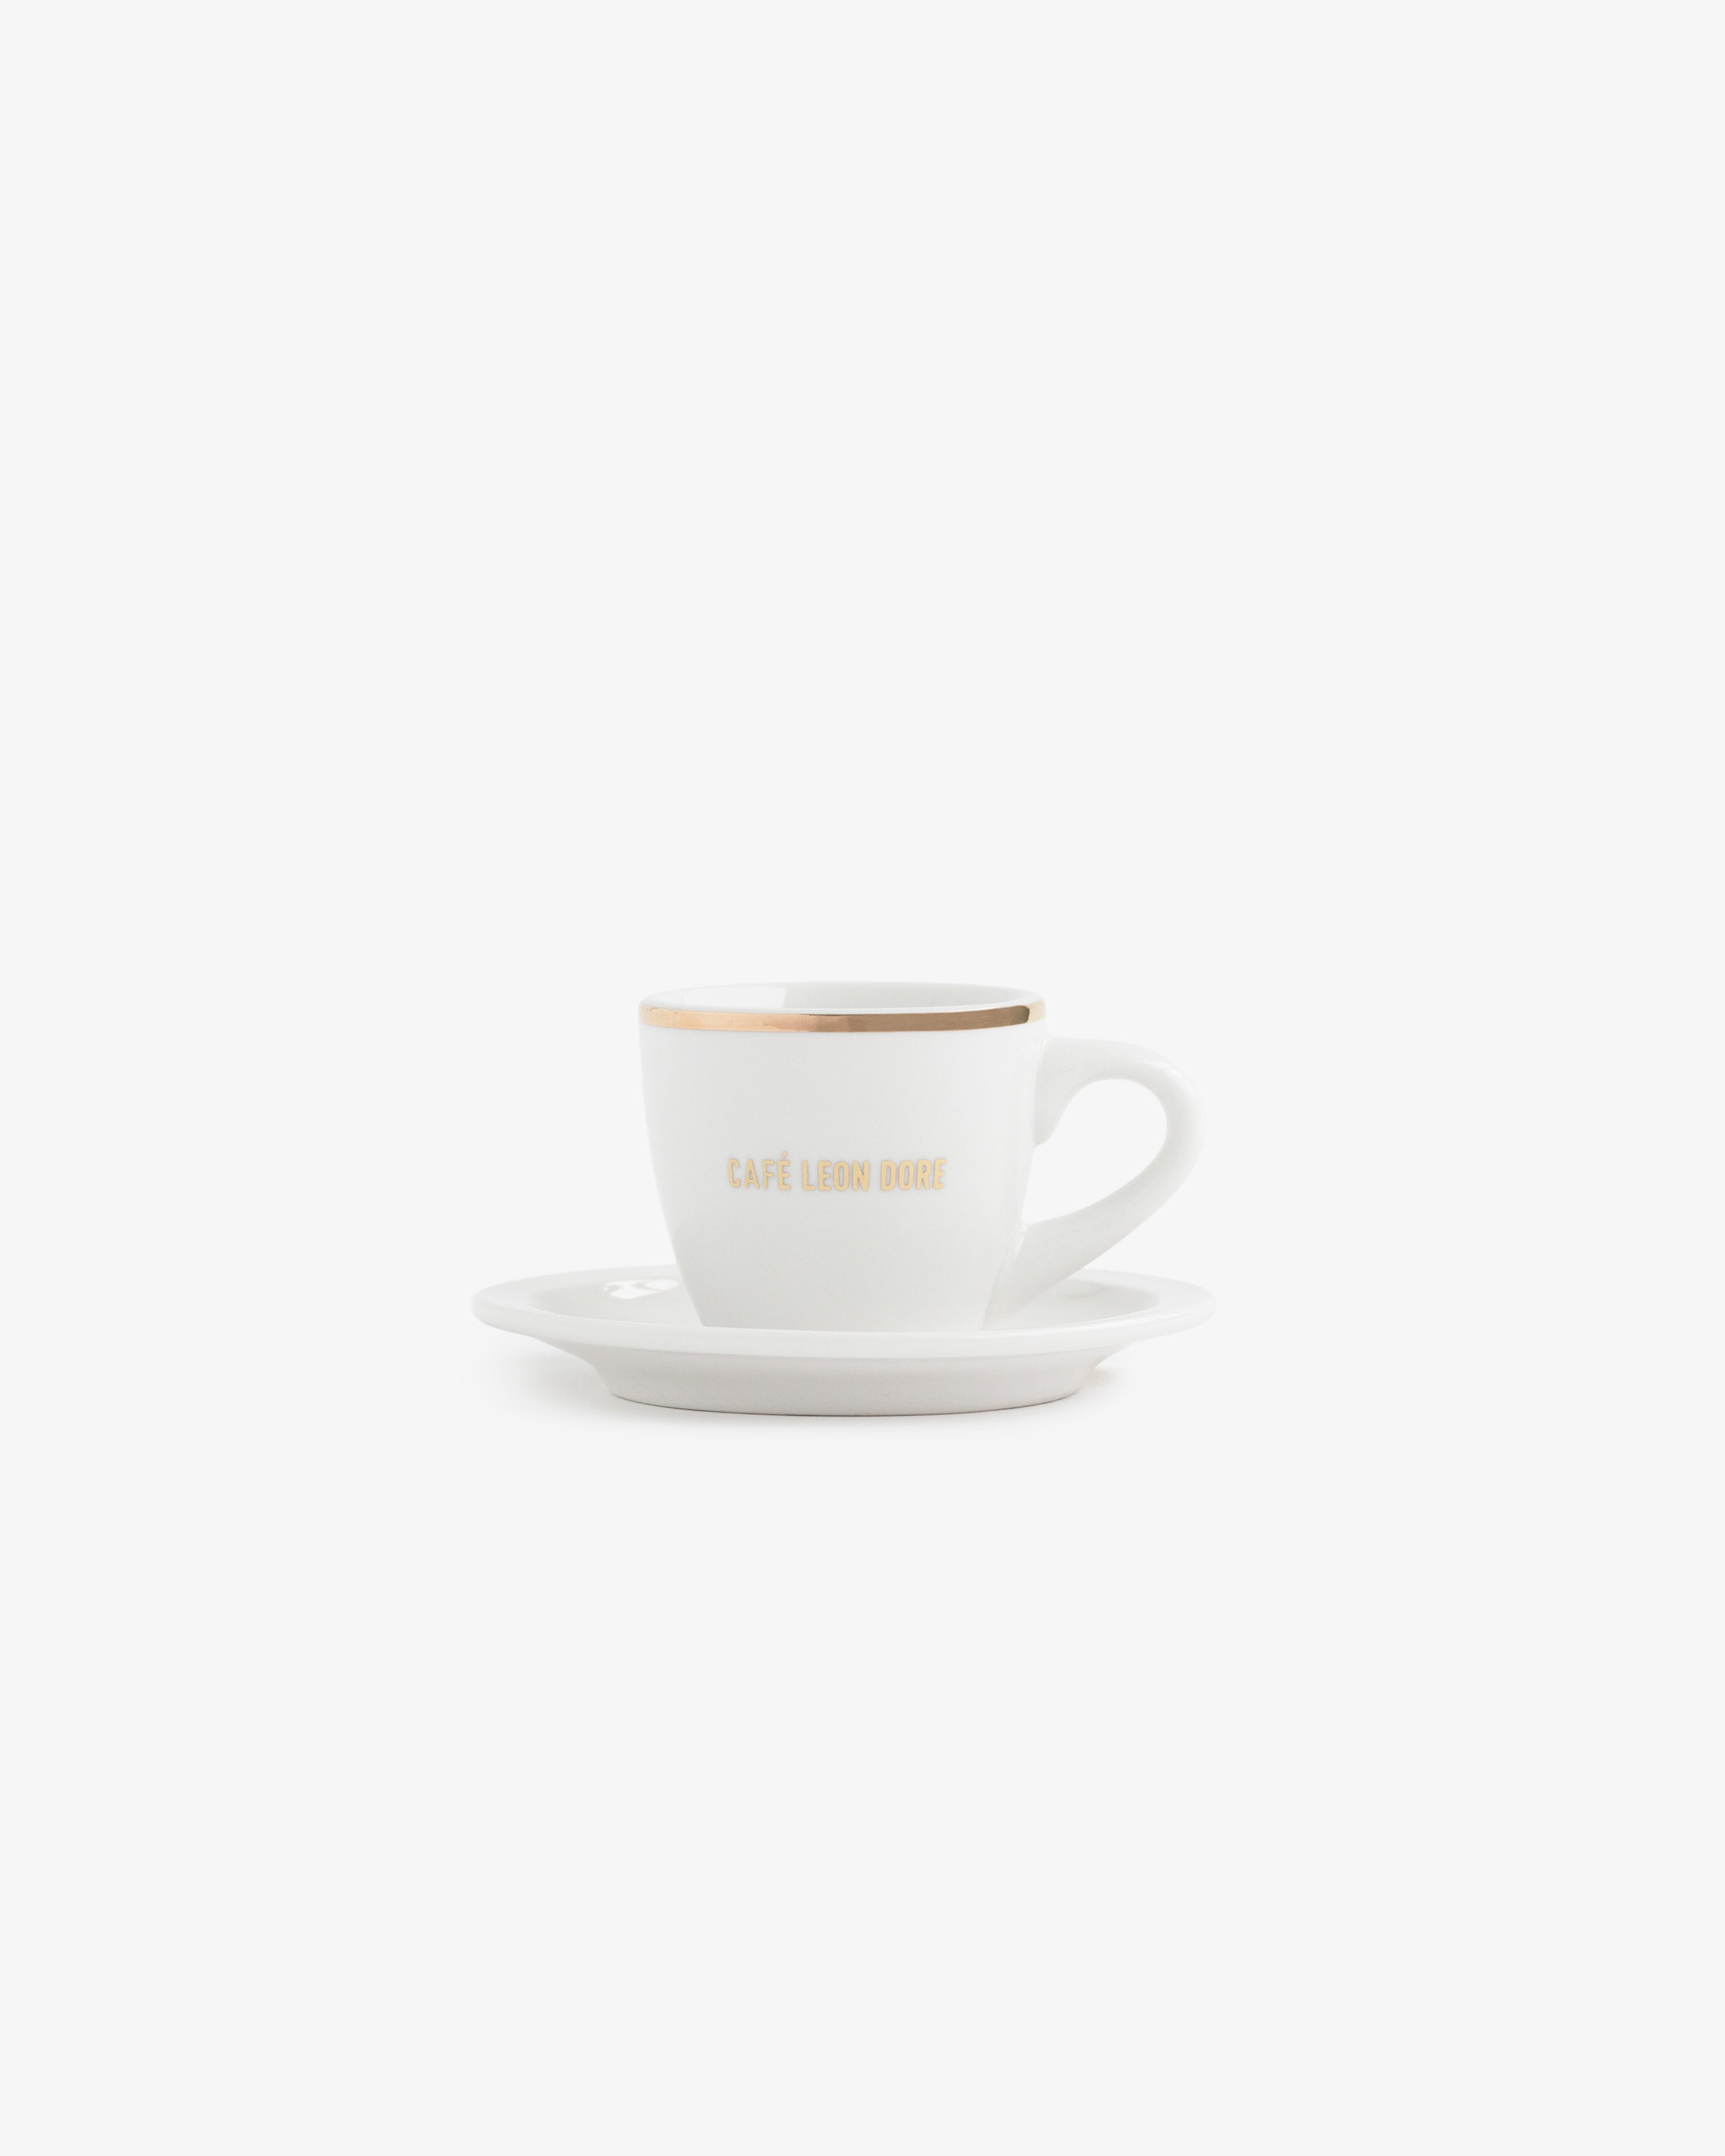 Café Leon Dore Espresso  Cup